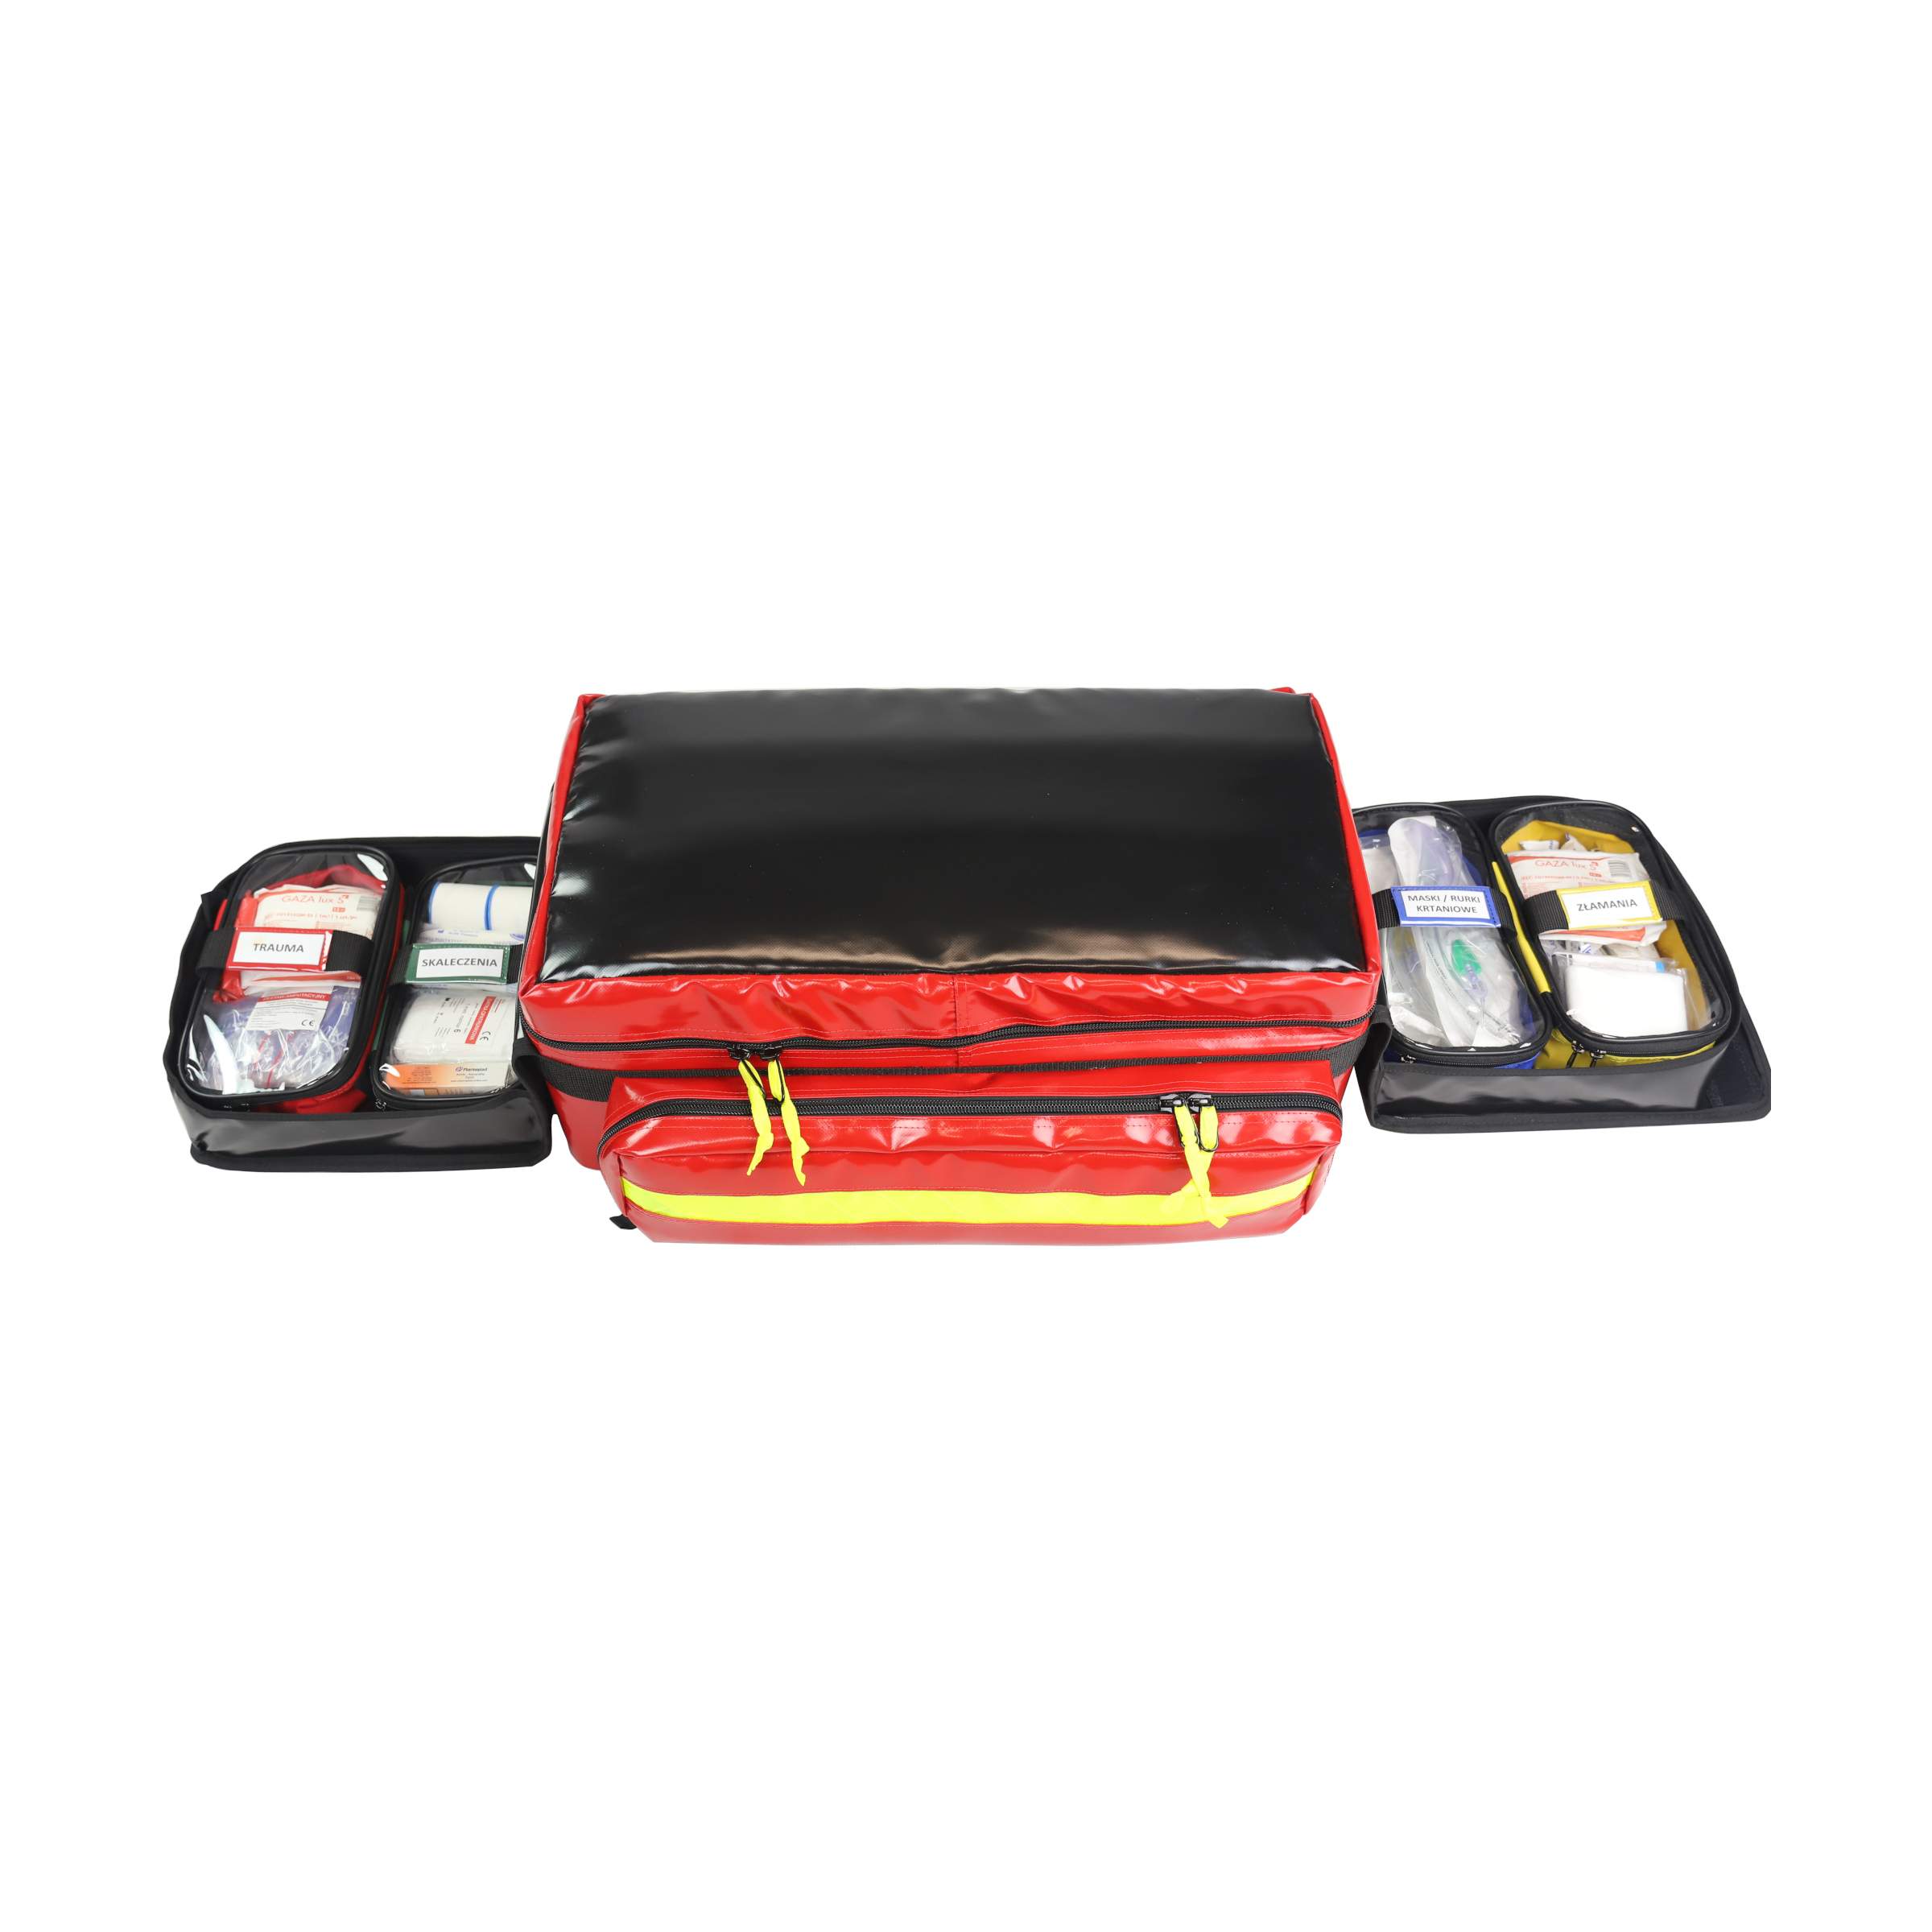 Zestaw PSP R1 w plecaku (KSRG 06.2021) z wyposażeniem